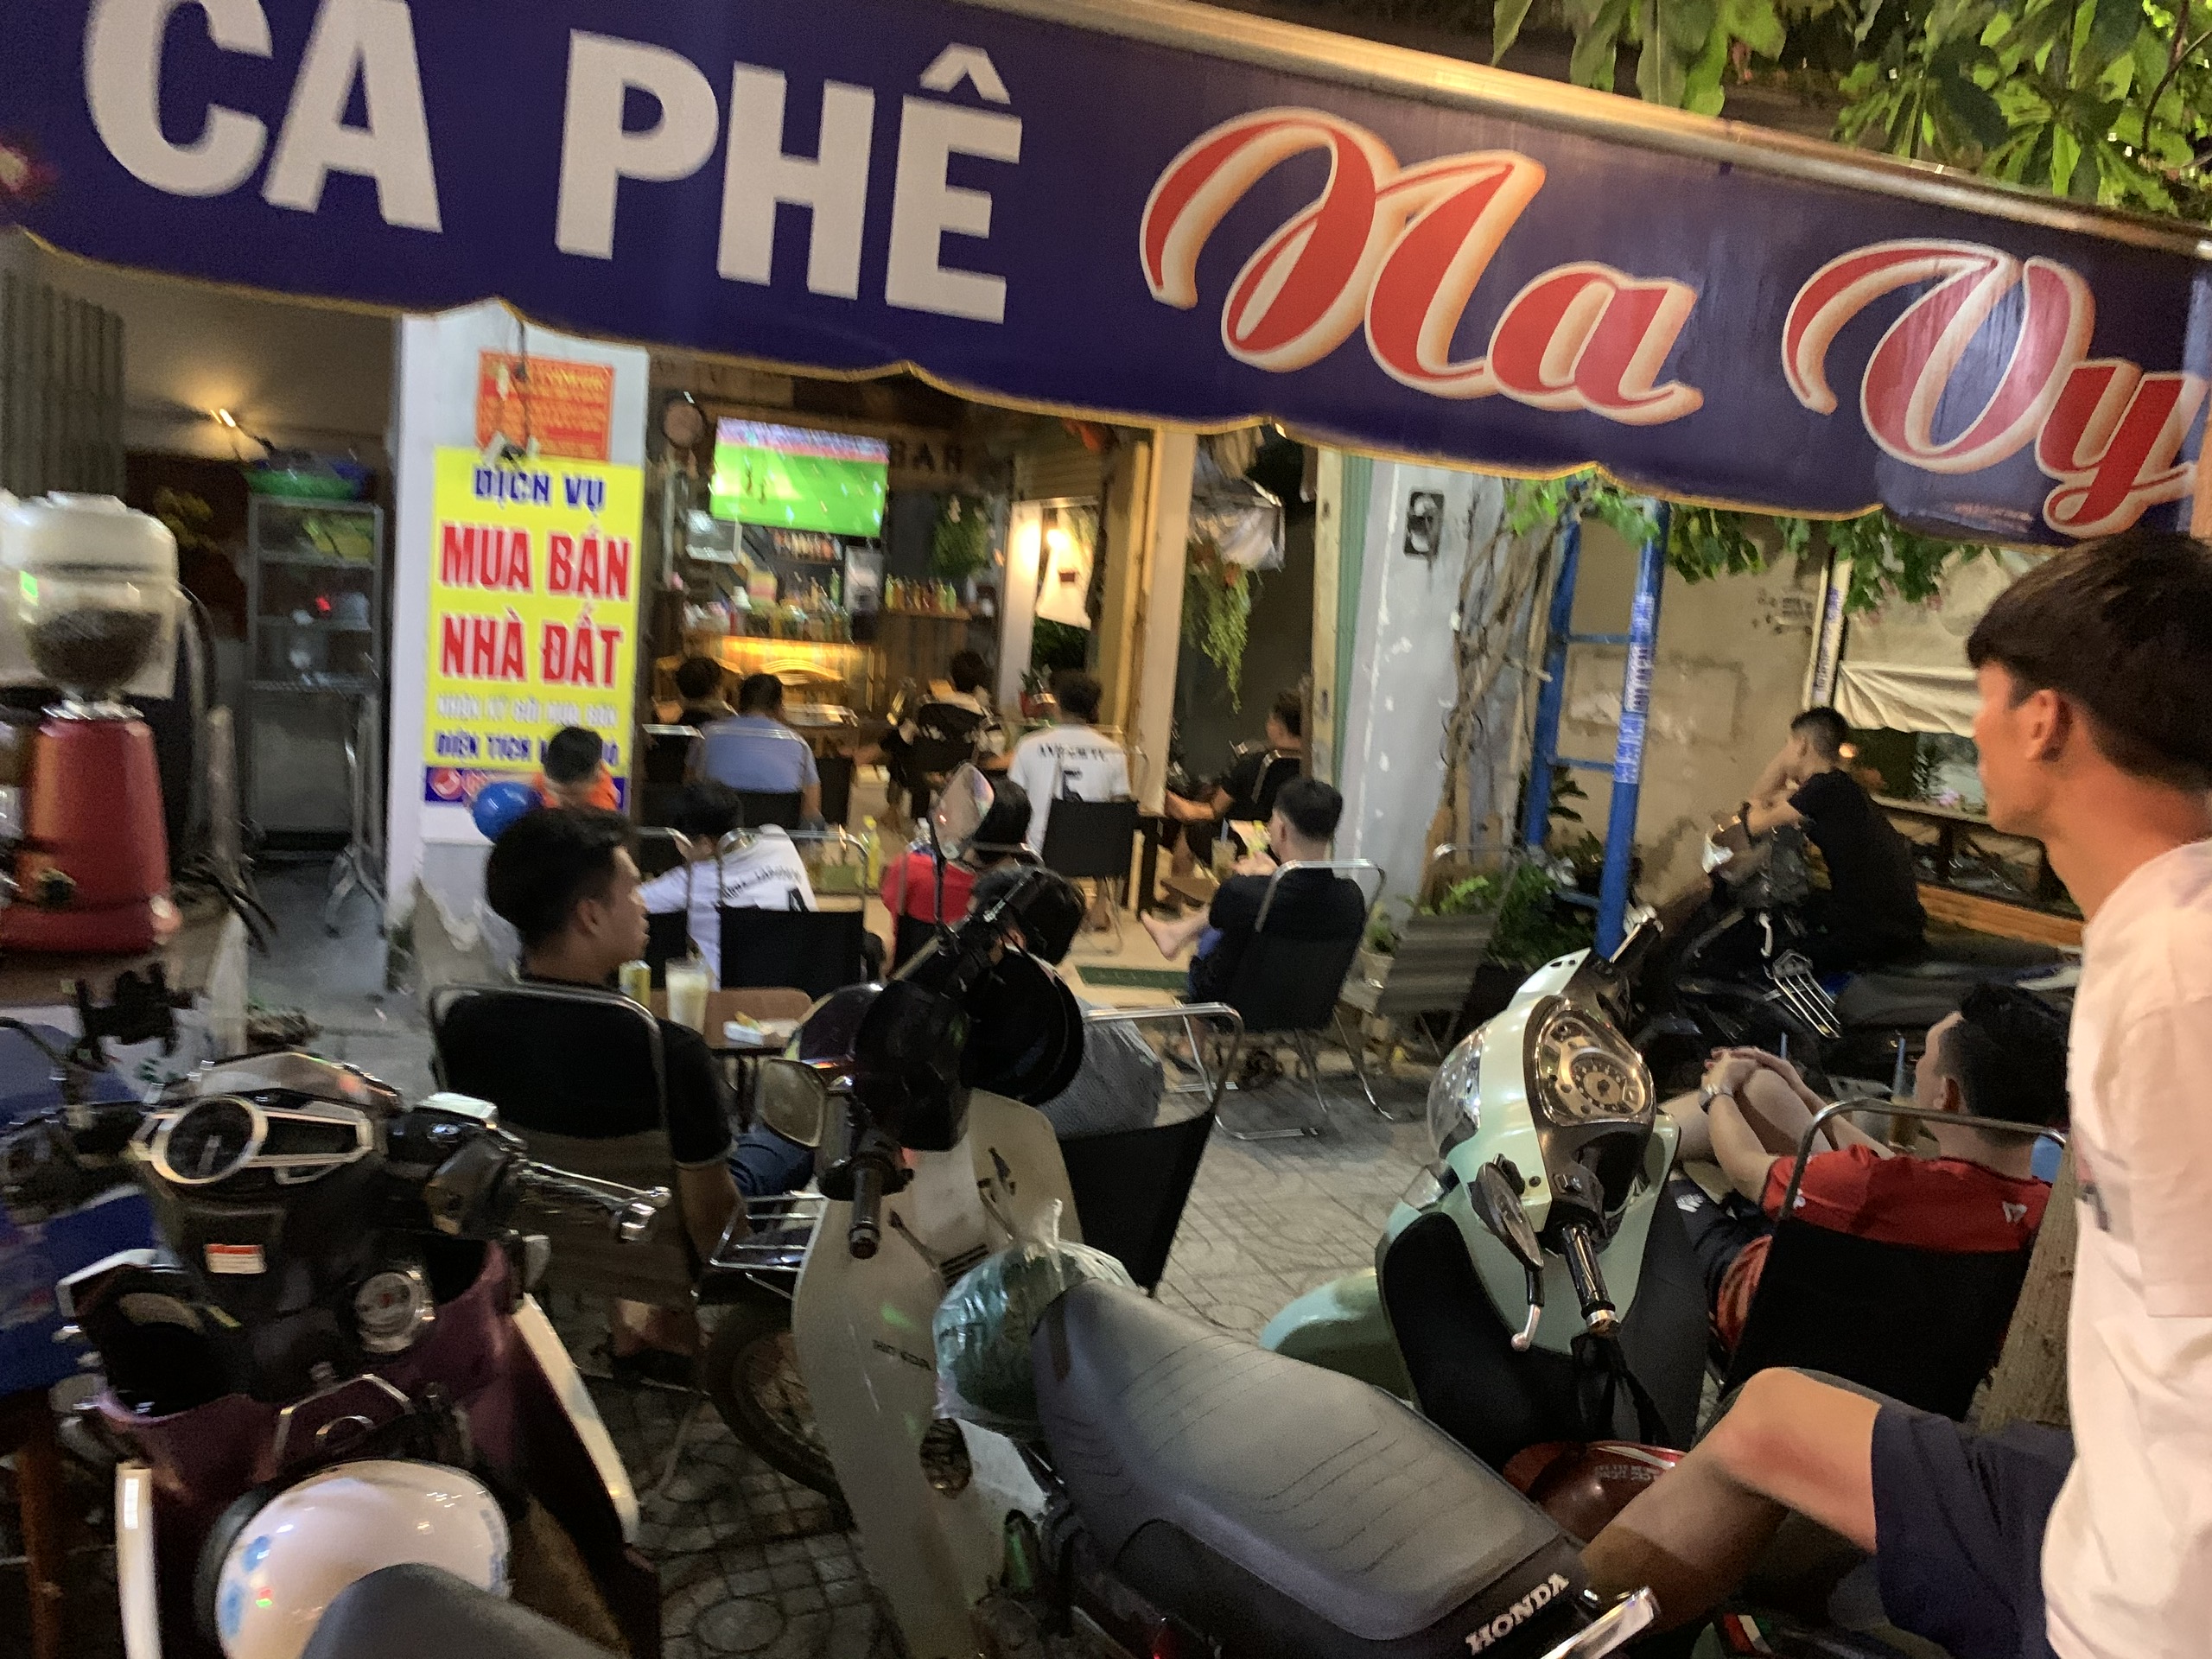 SANG QUÁN CAFE QUẬN 12 Lê Văn Khương